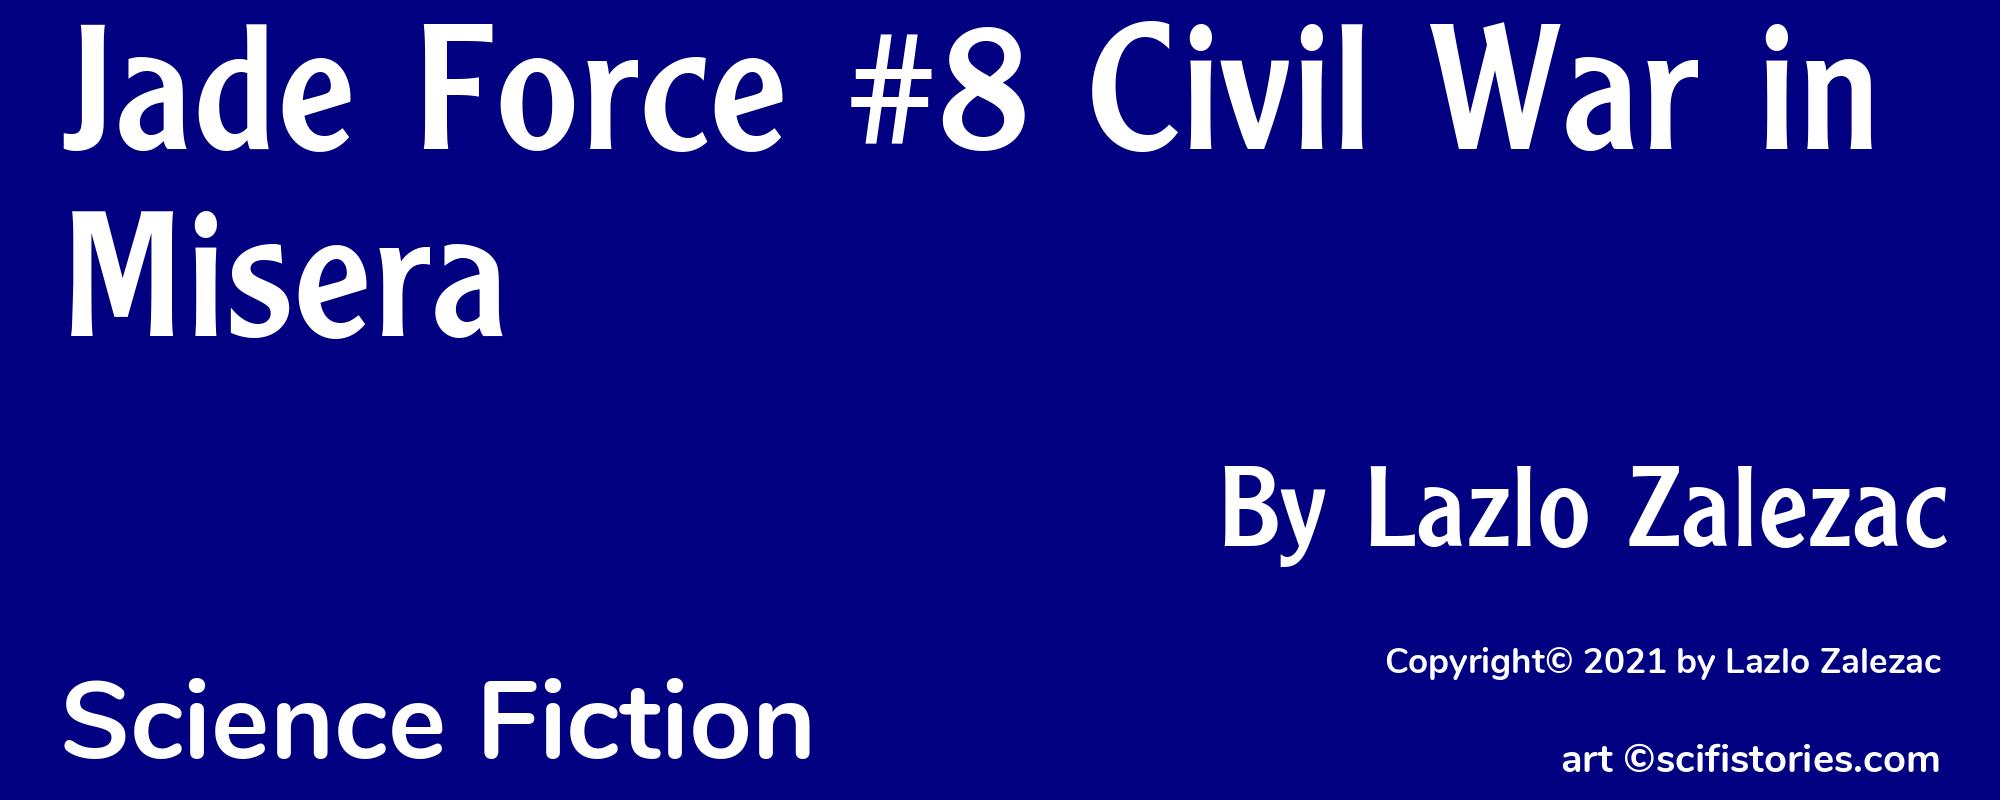 Jade Force #8 Civil War in Misera - Cover